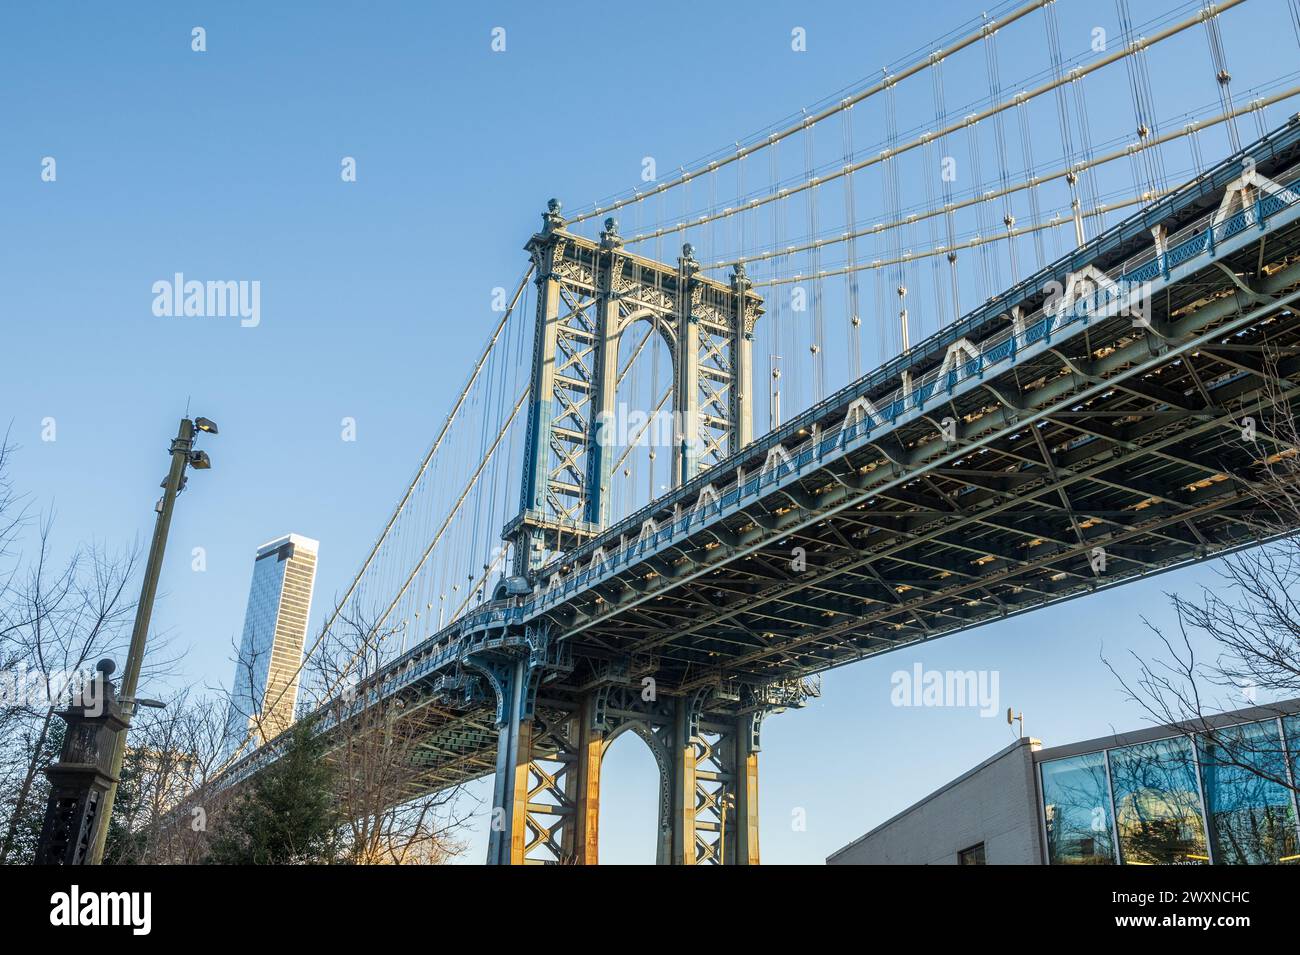 Dumbo ist ein Stadtteil im New York City Borough of Brooklyn. Es umfasst zwei Abschnitte: Einen zwischen den Manhattan und Brooklyn Bridges, Stockfoto